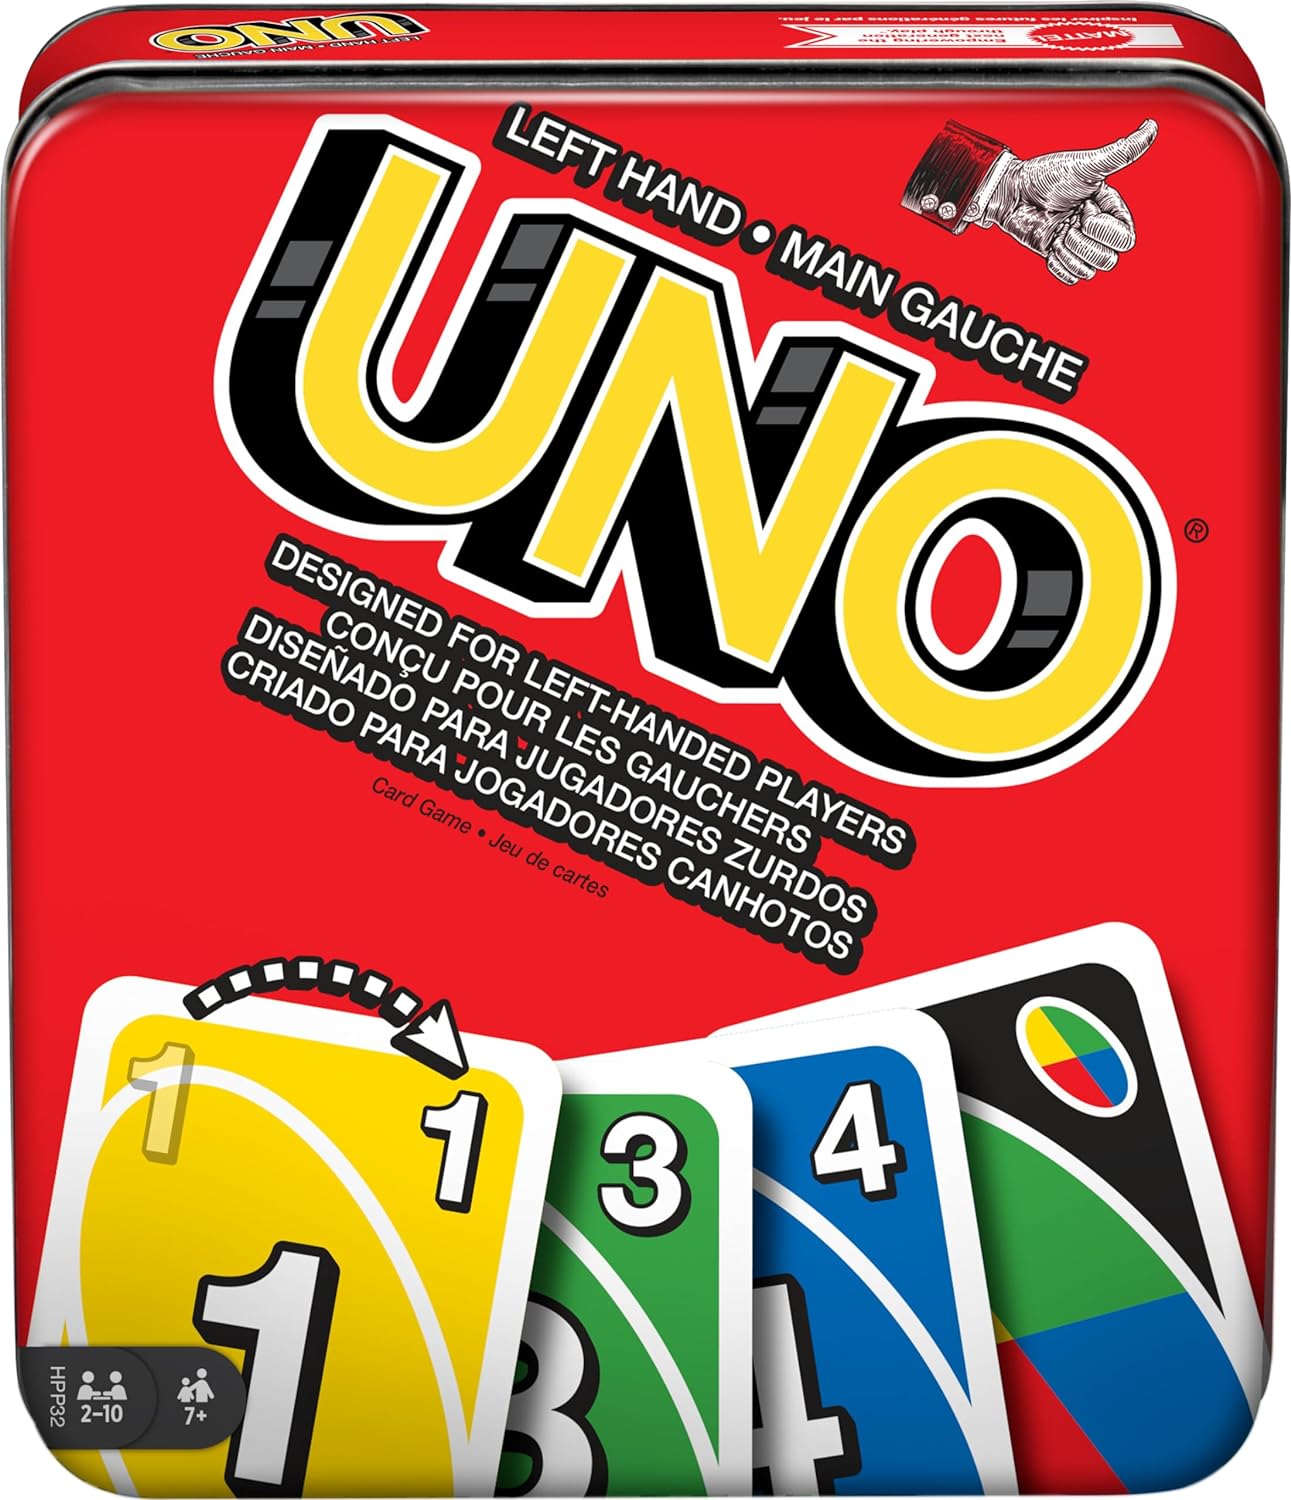 Wholesale Uno Mario Kart Cards